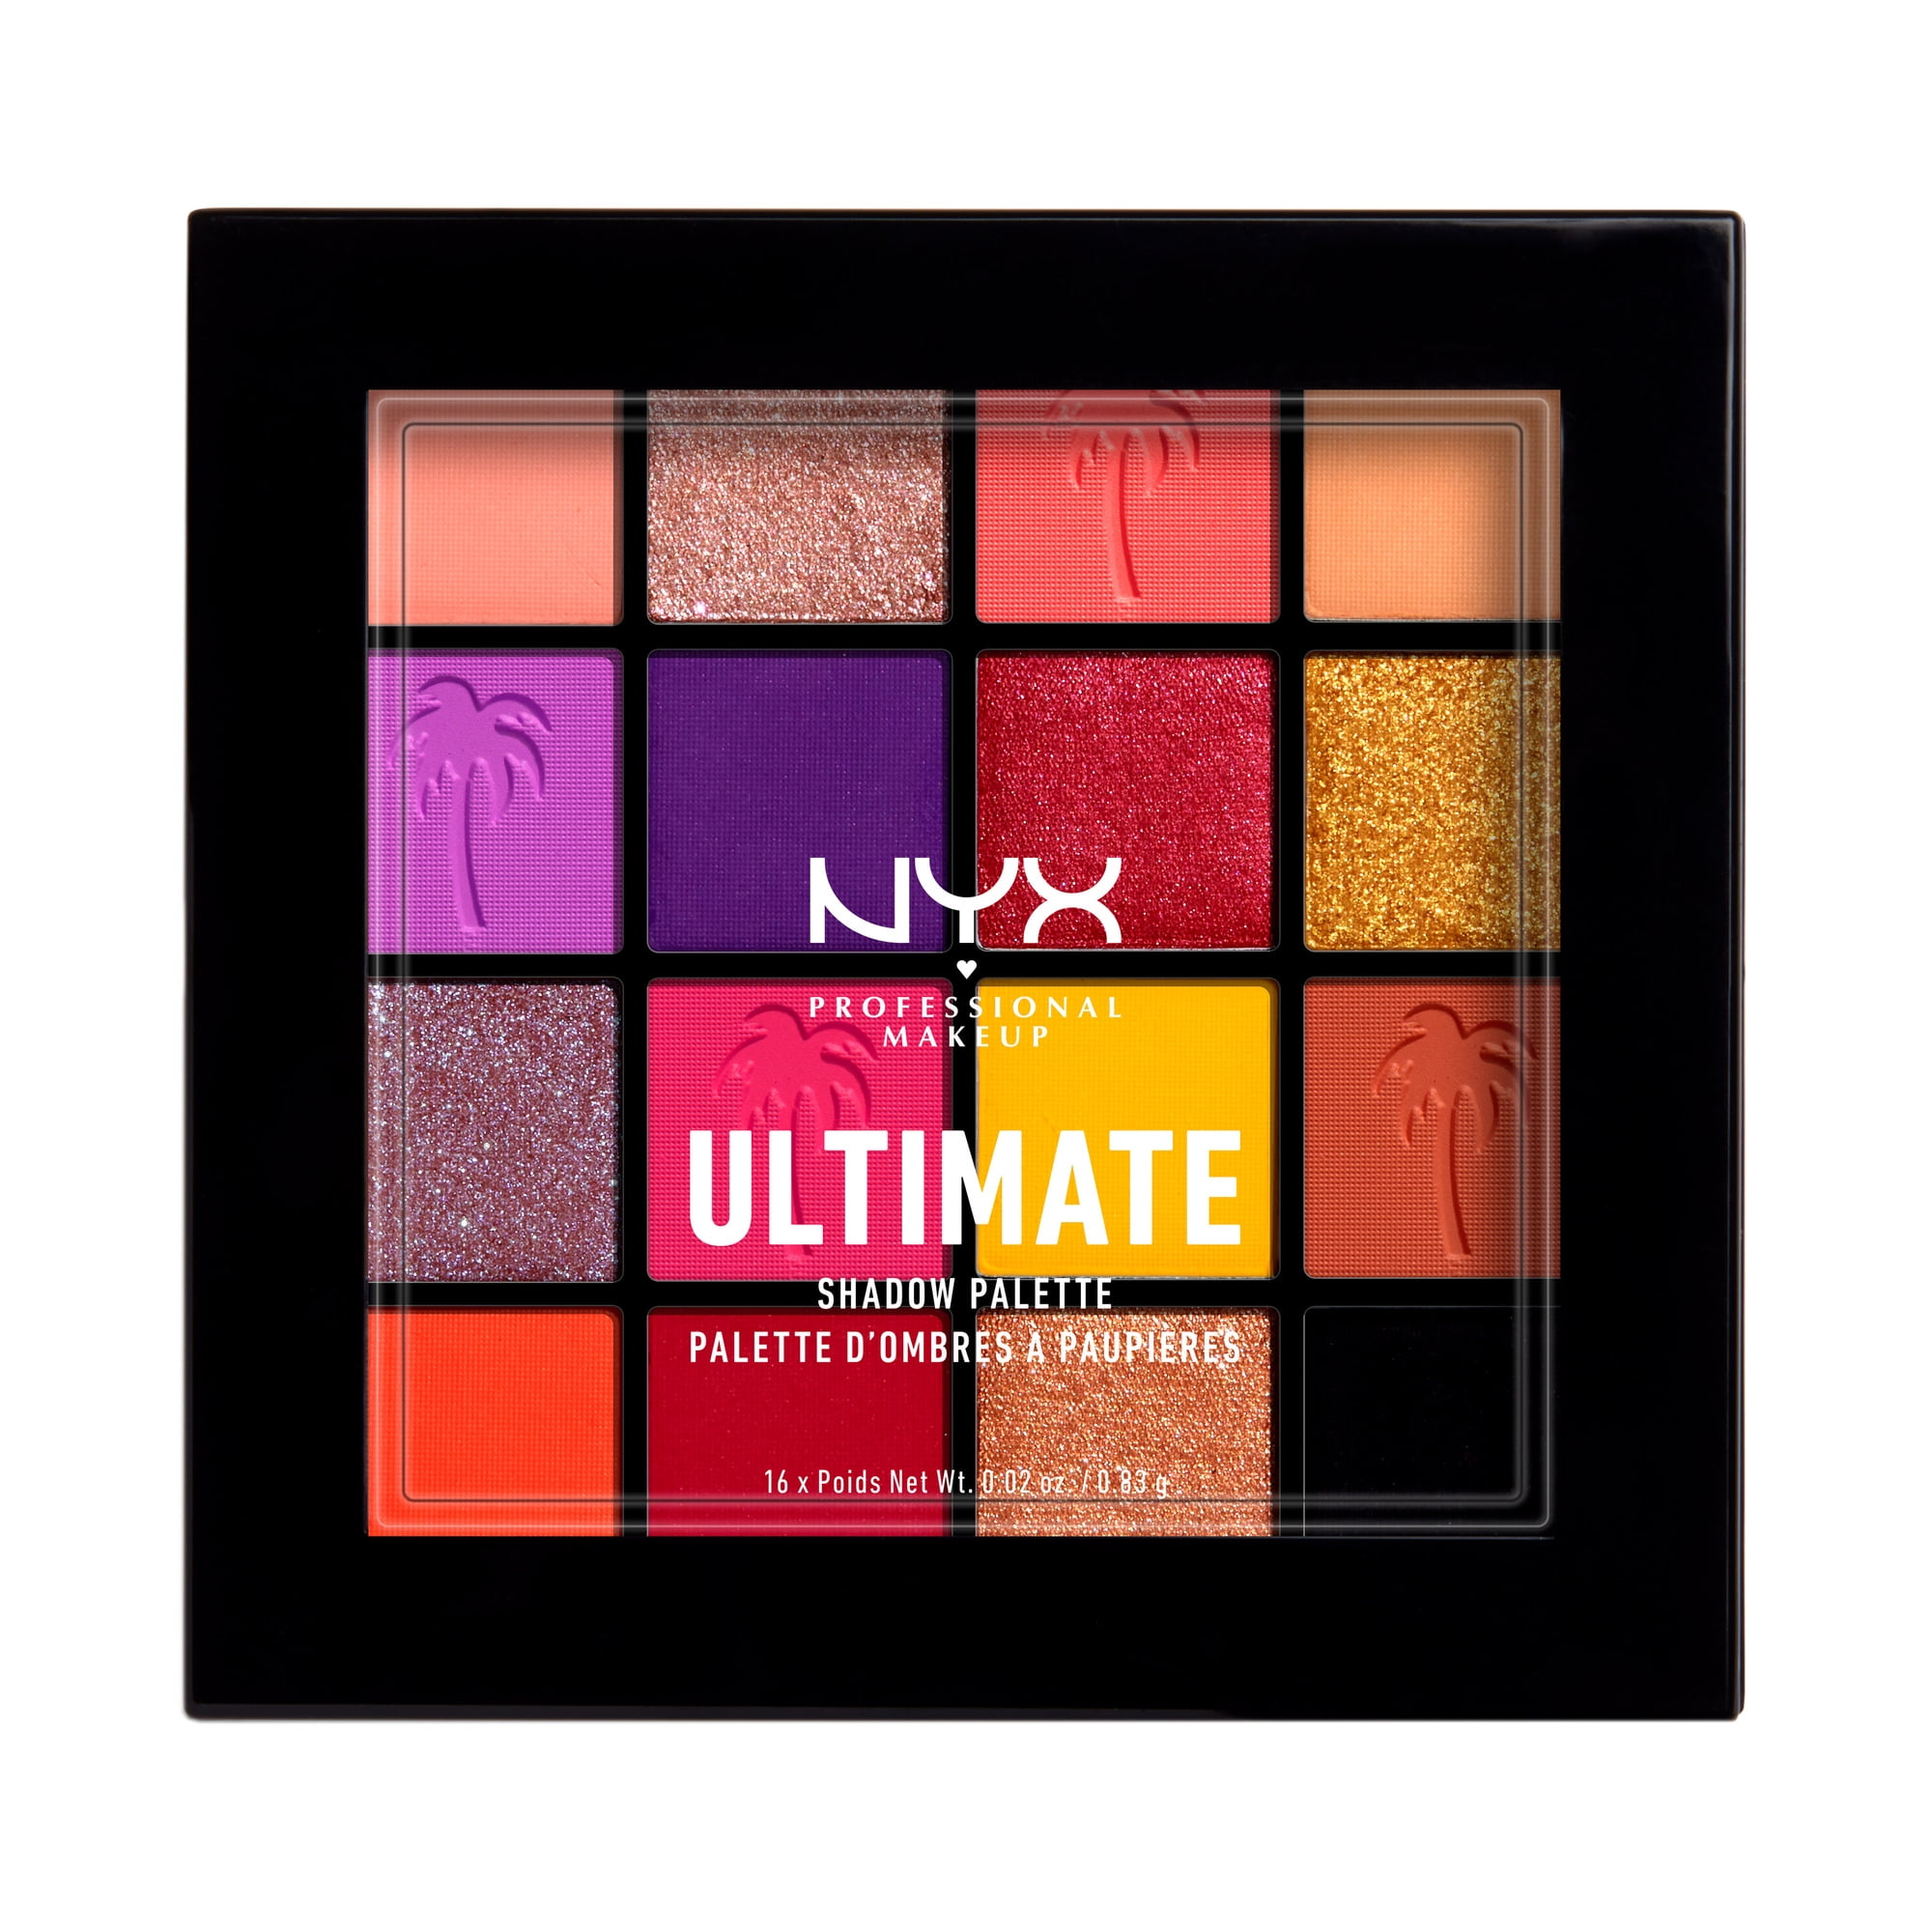 Forkludret Drikke sig fuld Hvile NYX Professional Makeup Ultimate Eye Shadow Palette, Warm Neutrals, 0.32 oz  - Walmart.com